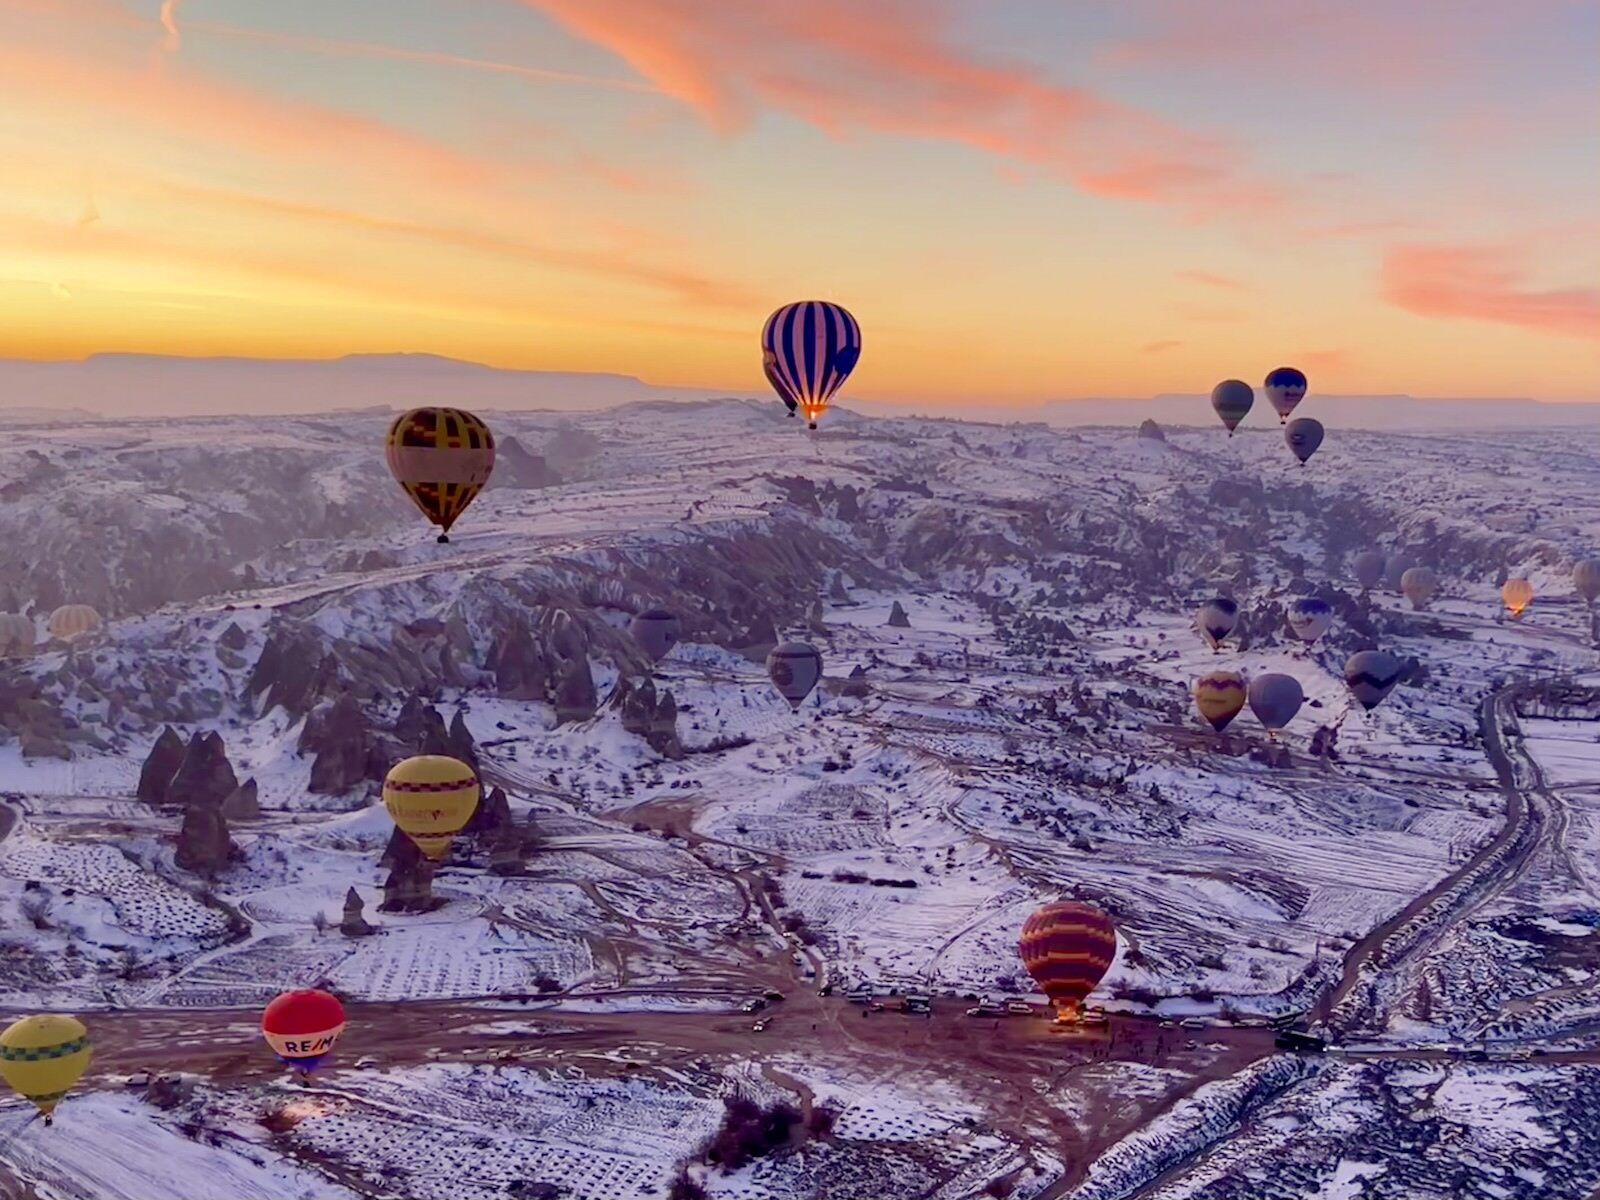 Cappadocia hot air balloons over a snow-covered landscape